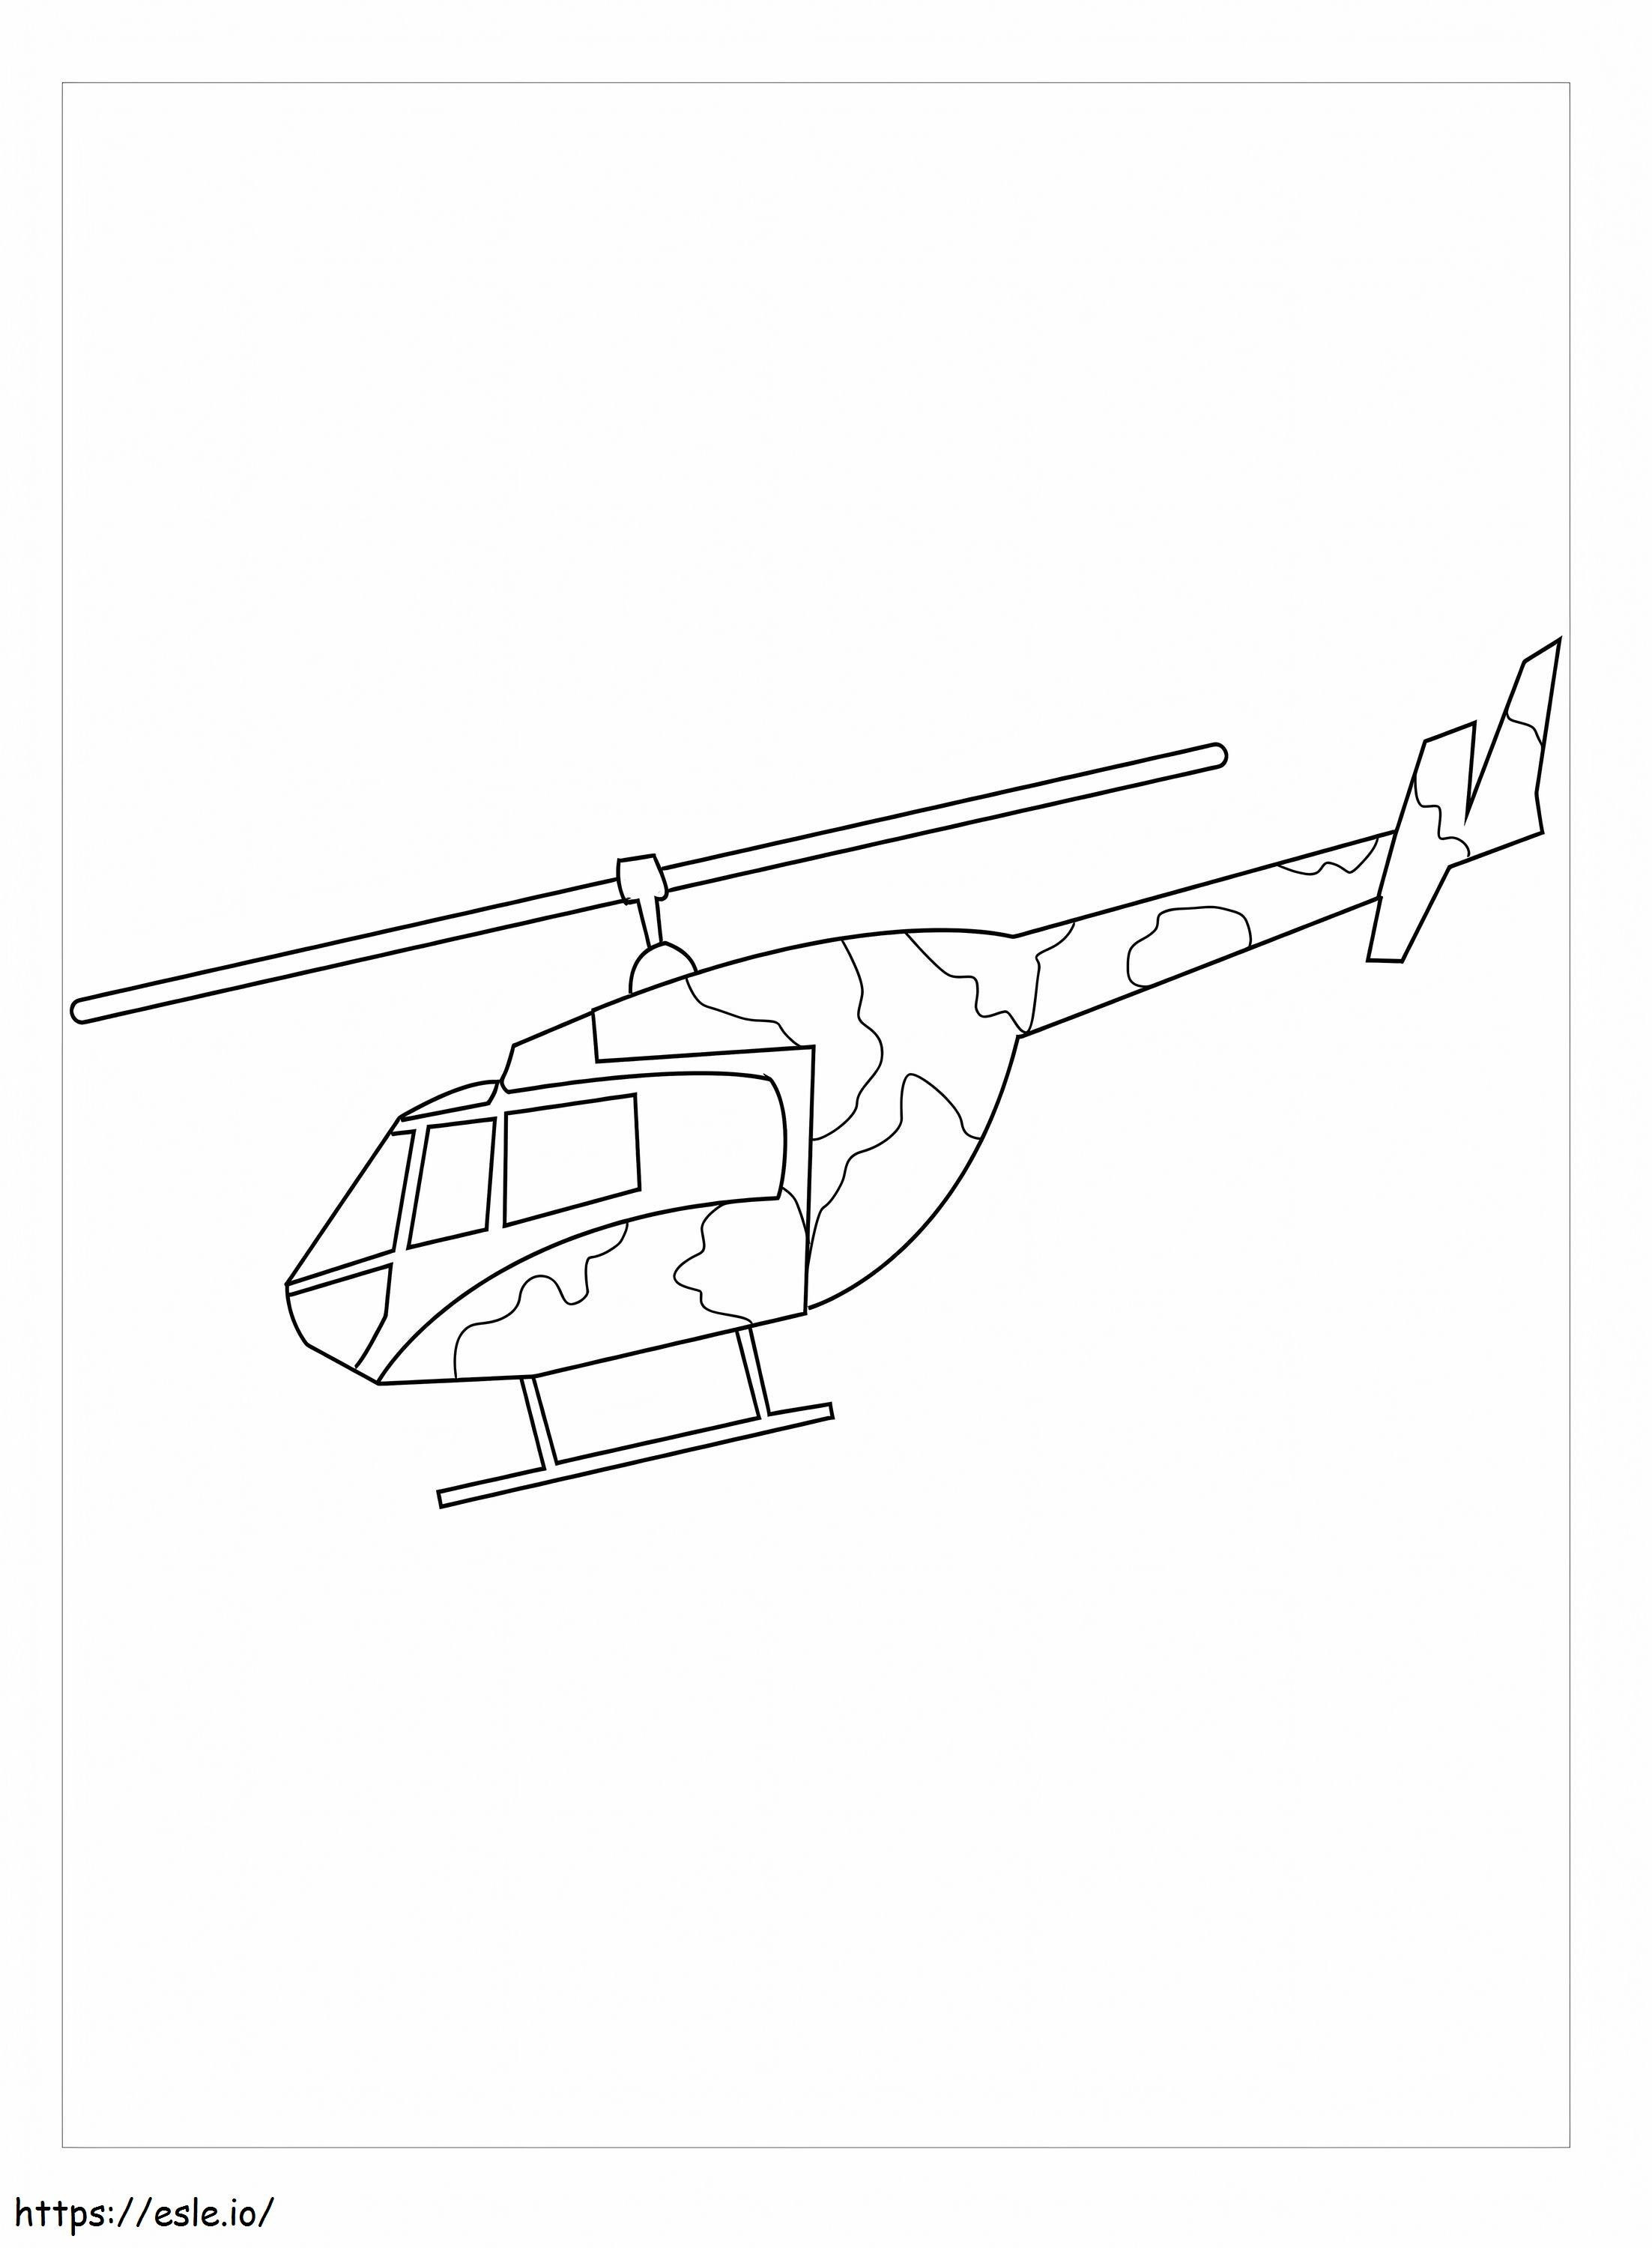 Helicóptero militar básico para colorear